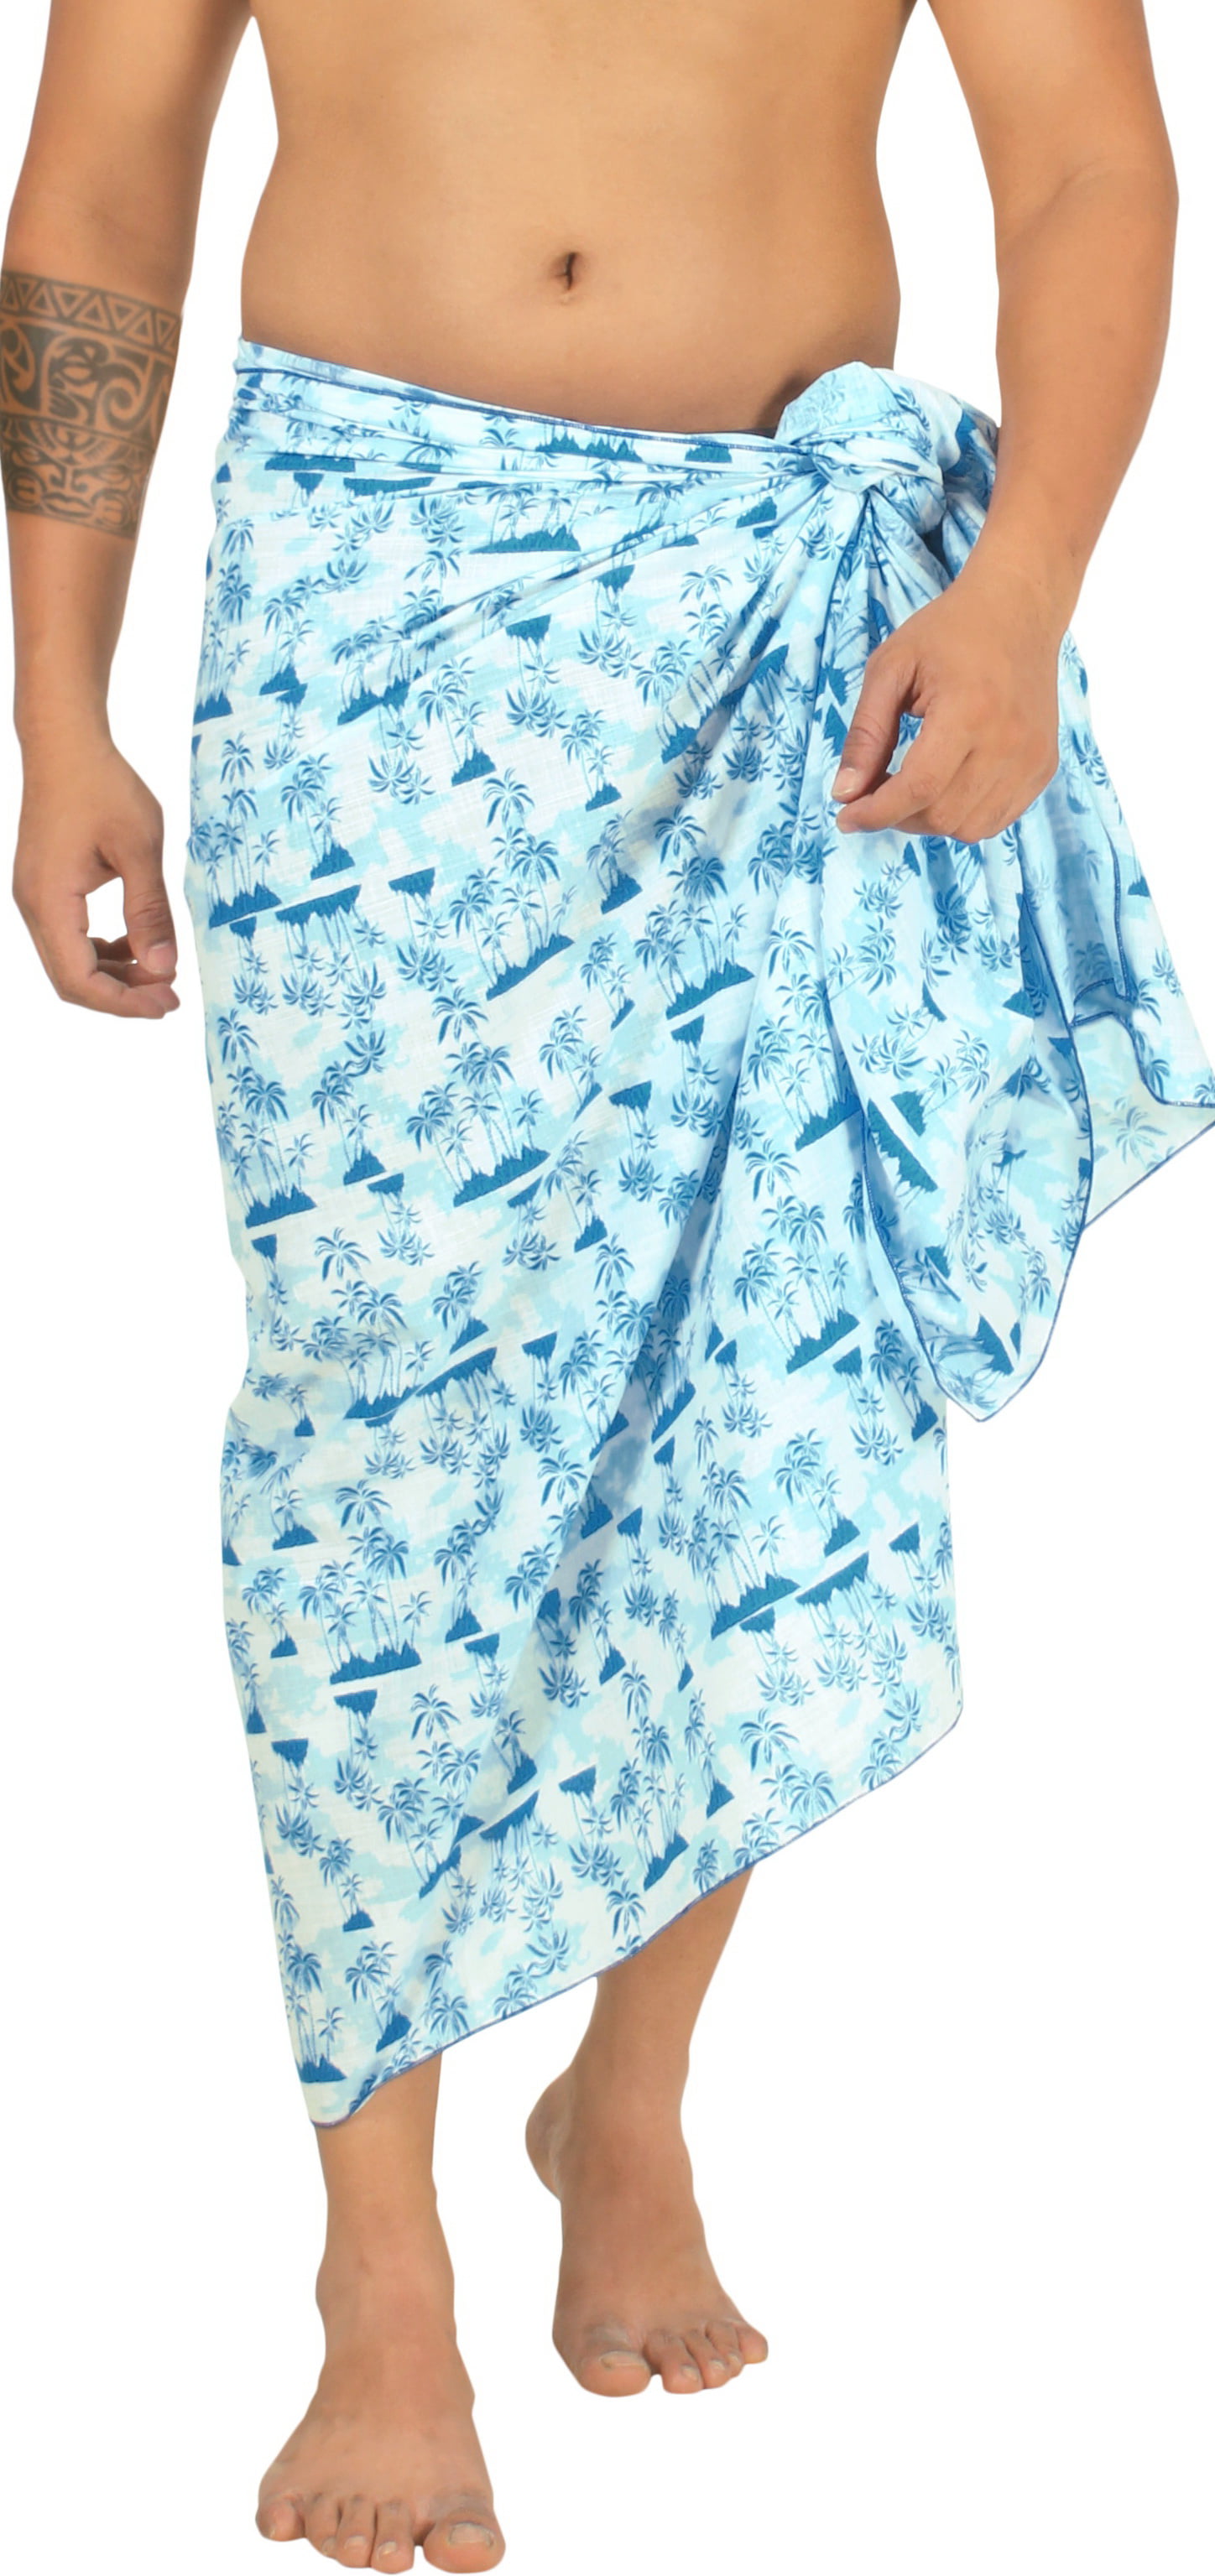 LA LEELA Men's Sulu Swimwear Samoan Cotton Linen Effect Pareo Beachwear  Wrap Swimsuits For Men One Size Cobalt, Geometric